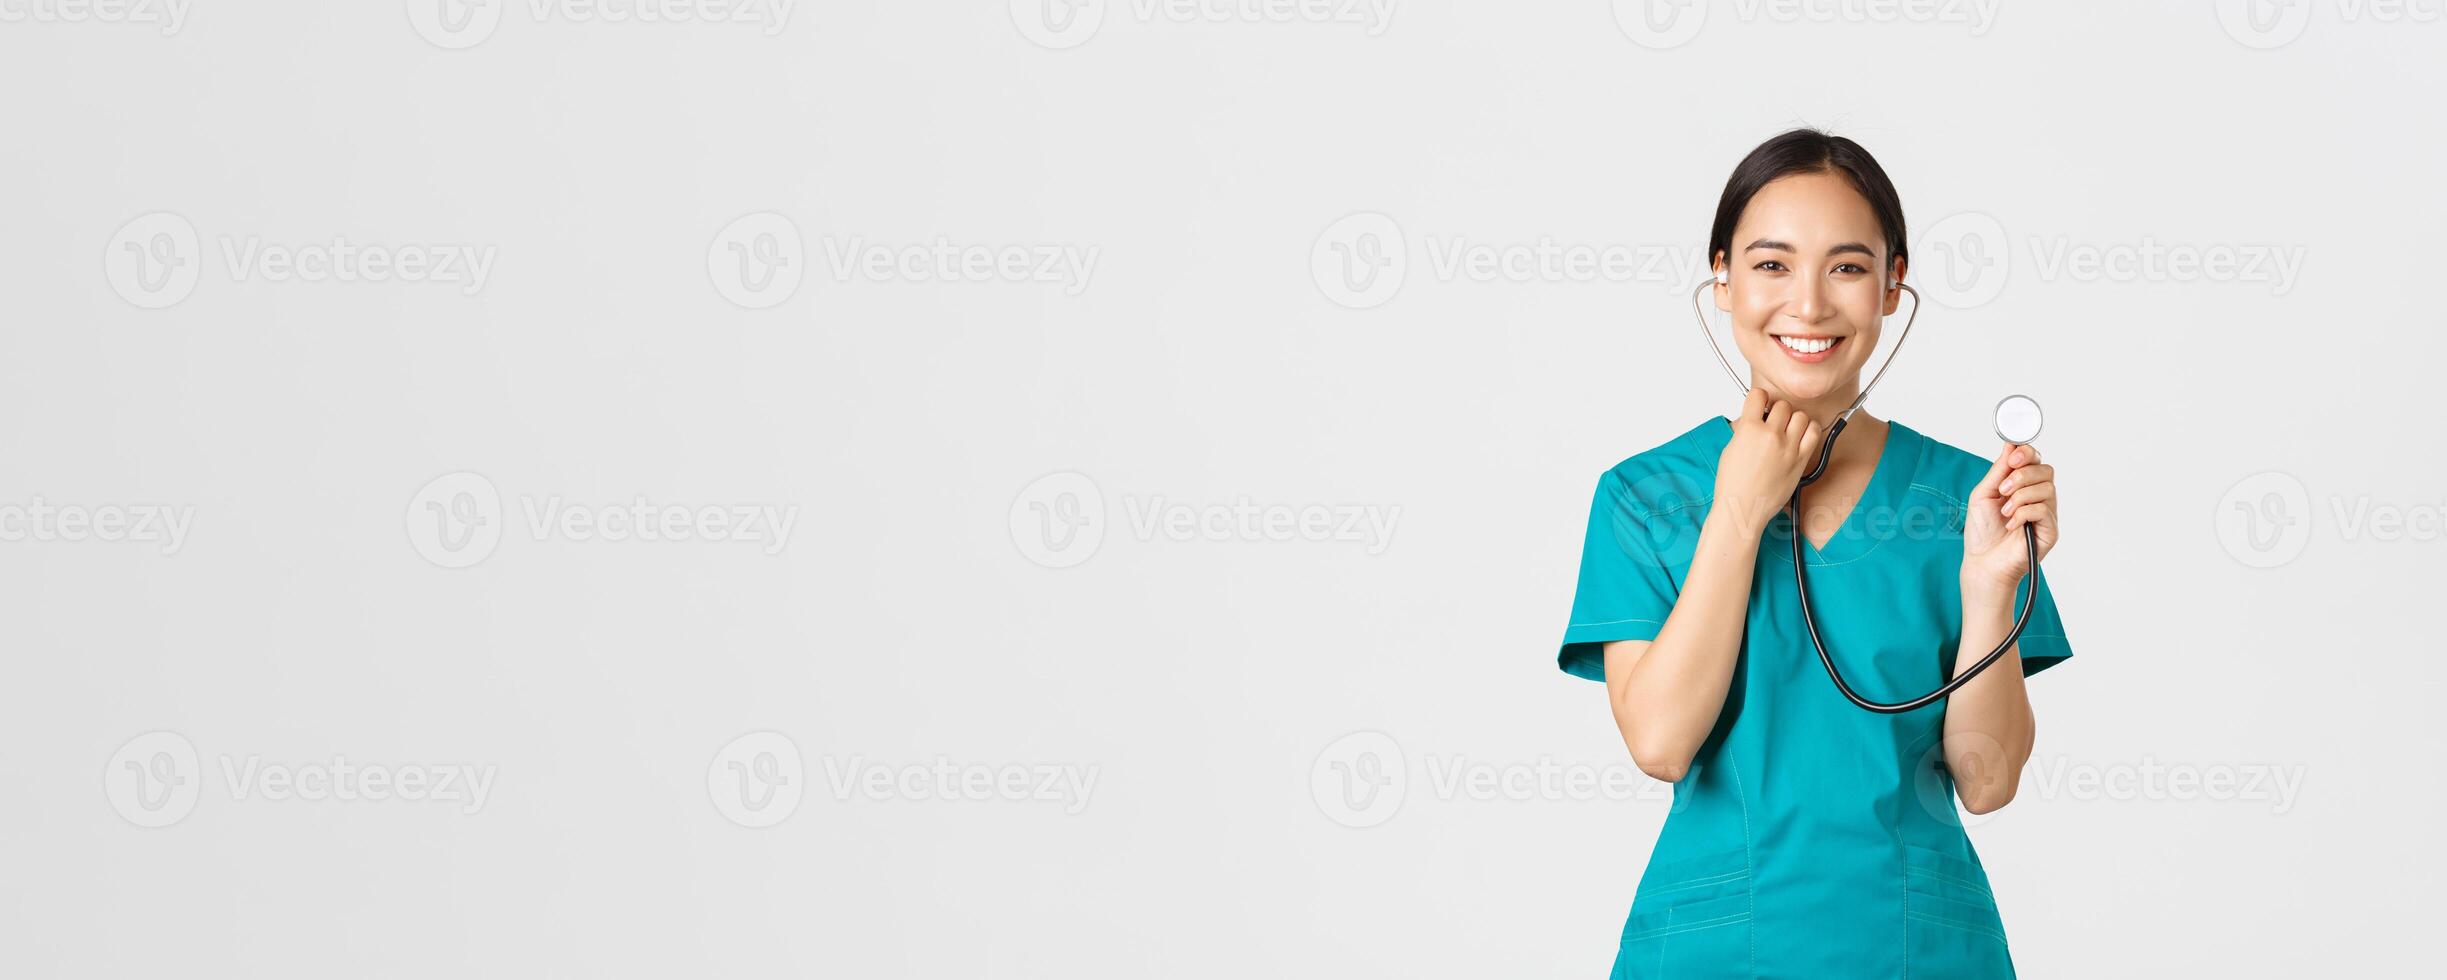 covid19, sjukvård arbetare och förebyggande virus begrepp. glad leende asiatisk kvinna läkare, läkare rådfråga patient, undersöka person med stetoskop, stående vit bakgrund foto